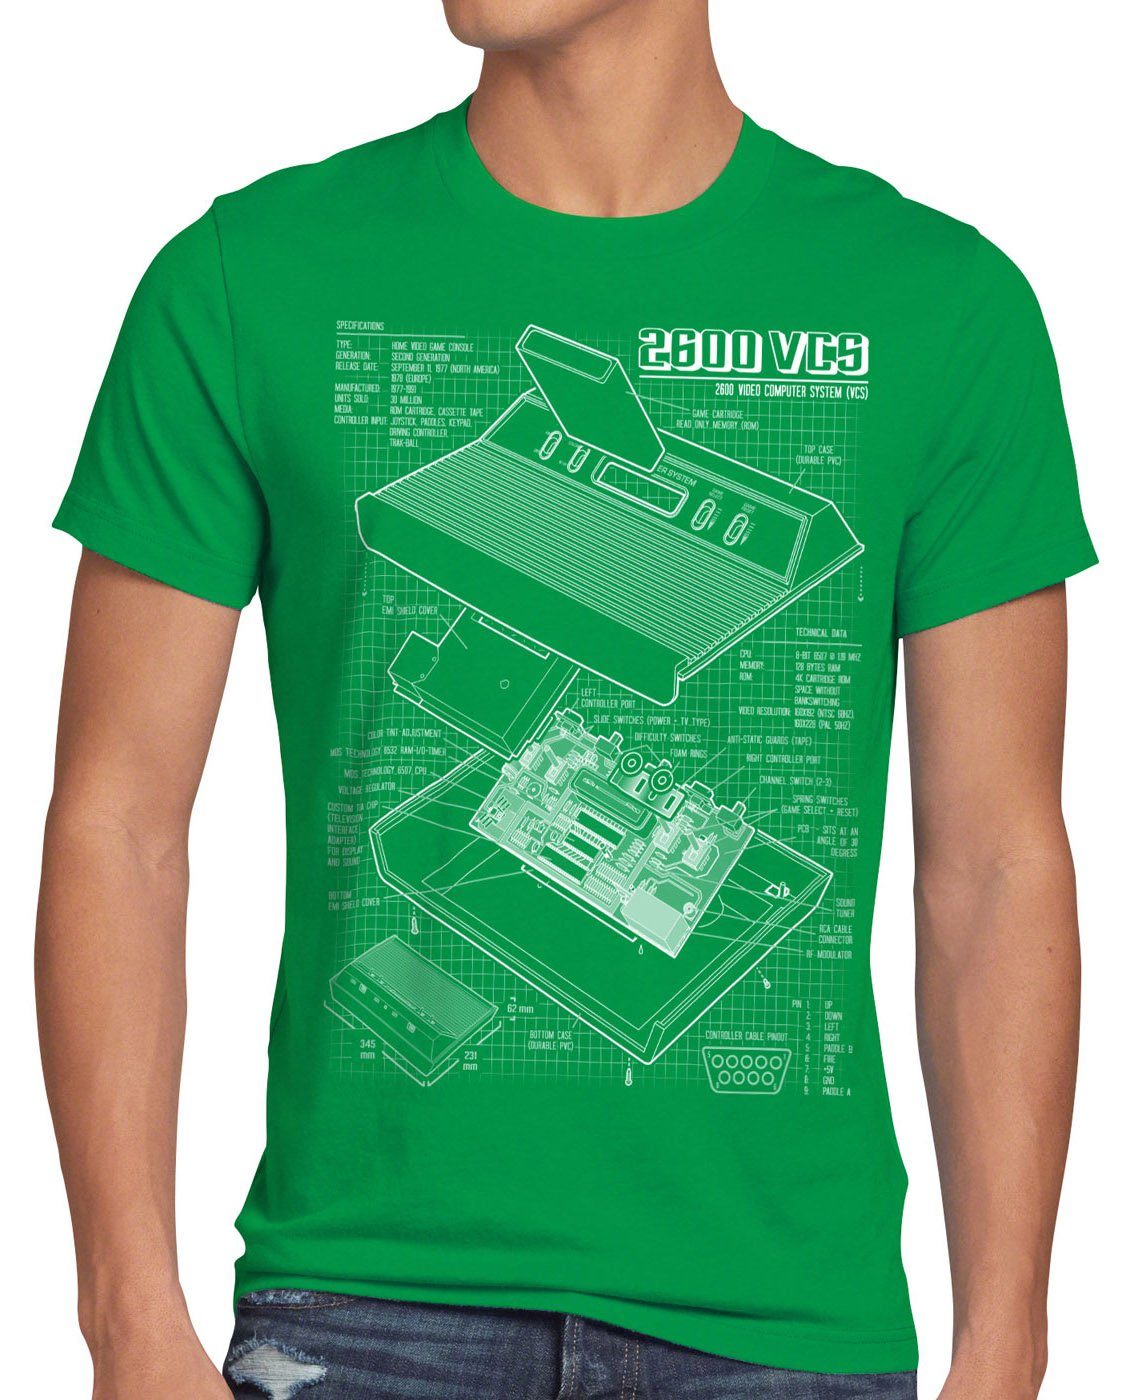 style3 Print-Shirt Herren T-Shirt VCS 2600 Heimcomputer Blaupause classic gamer grün